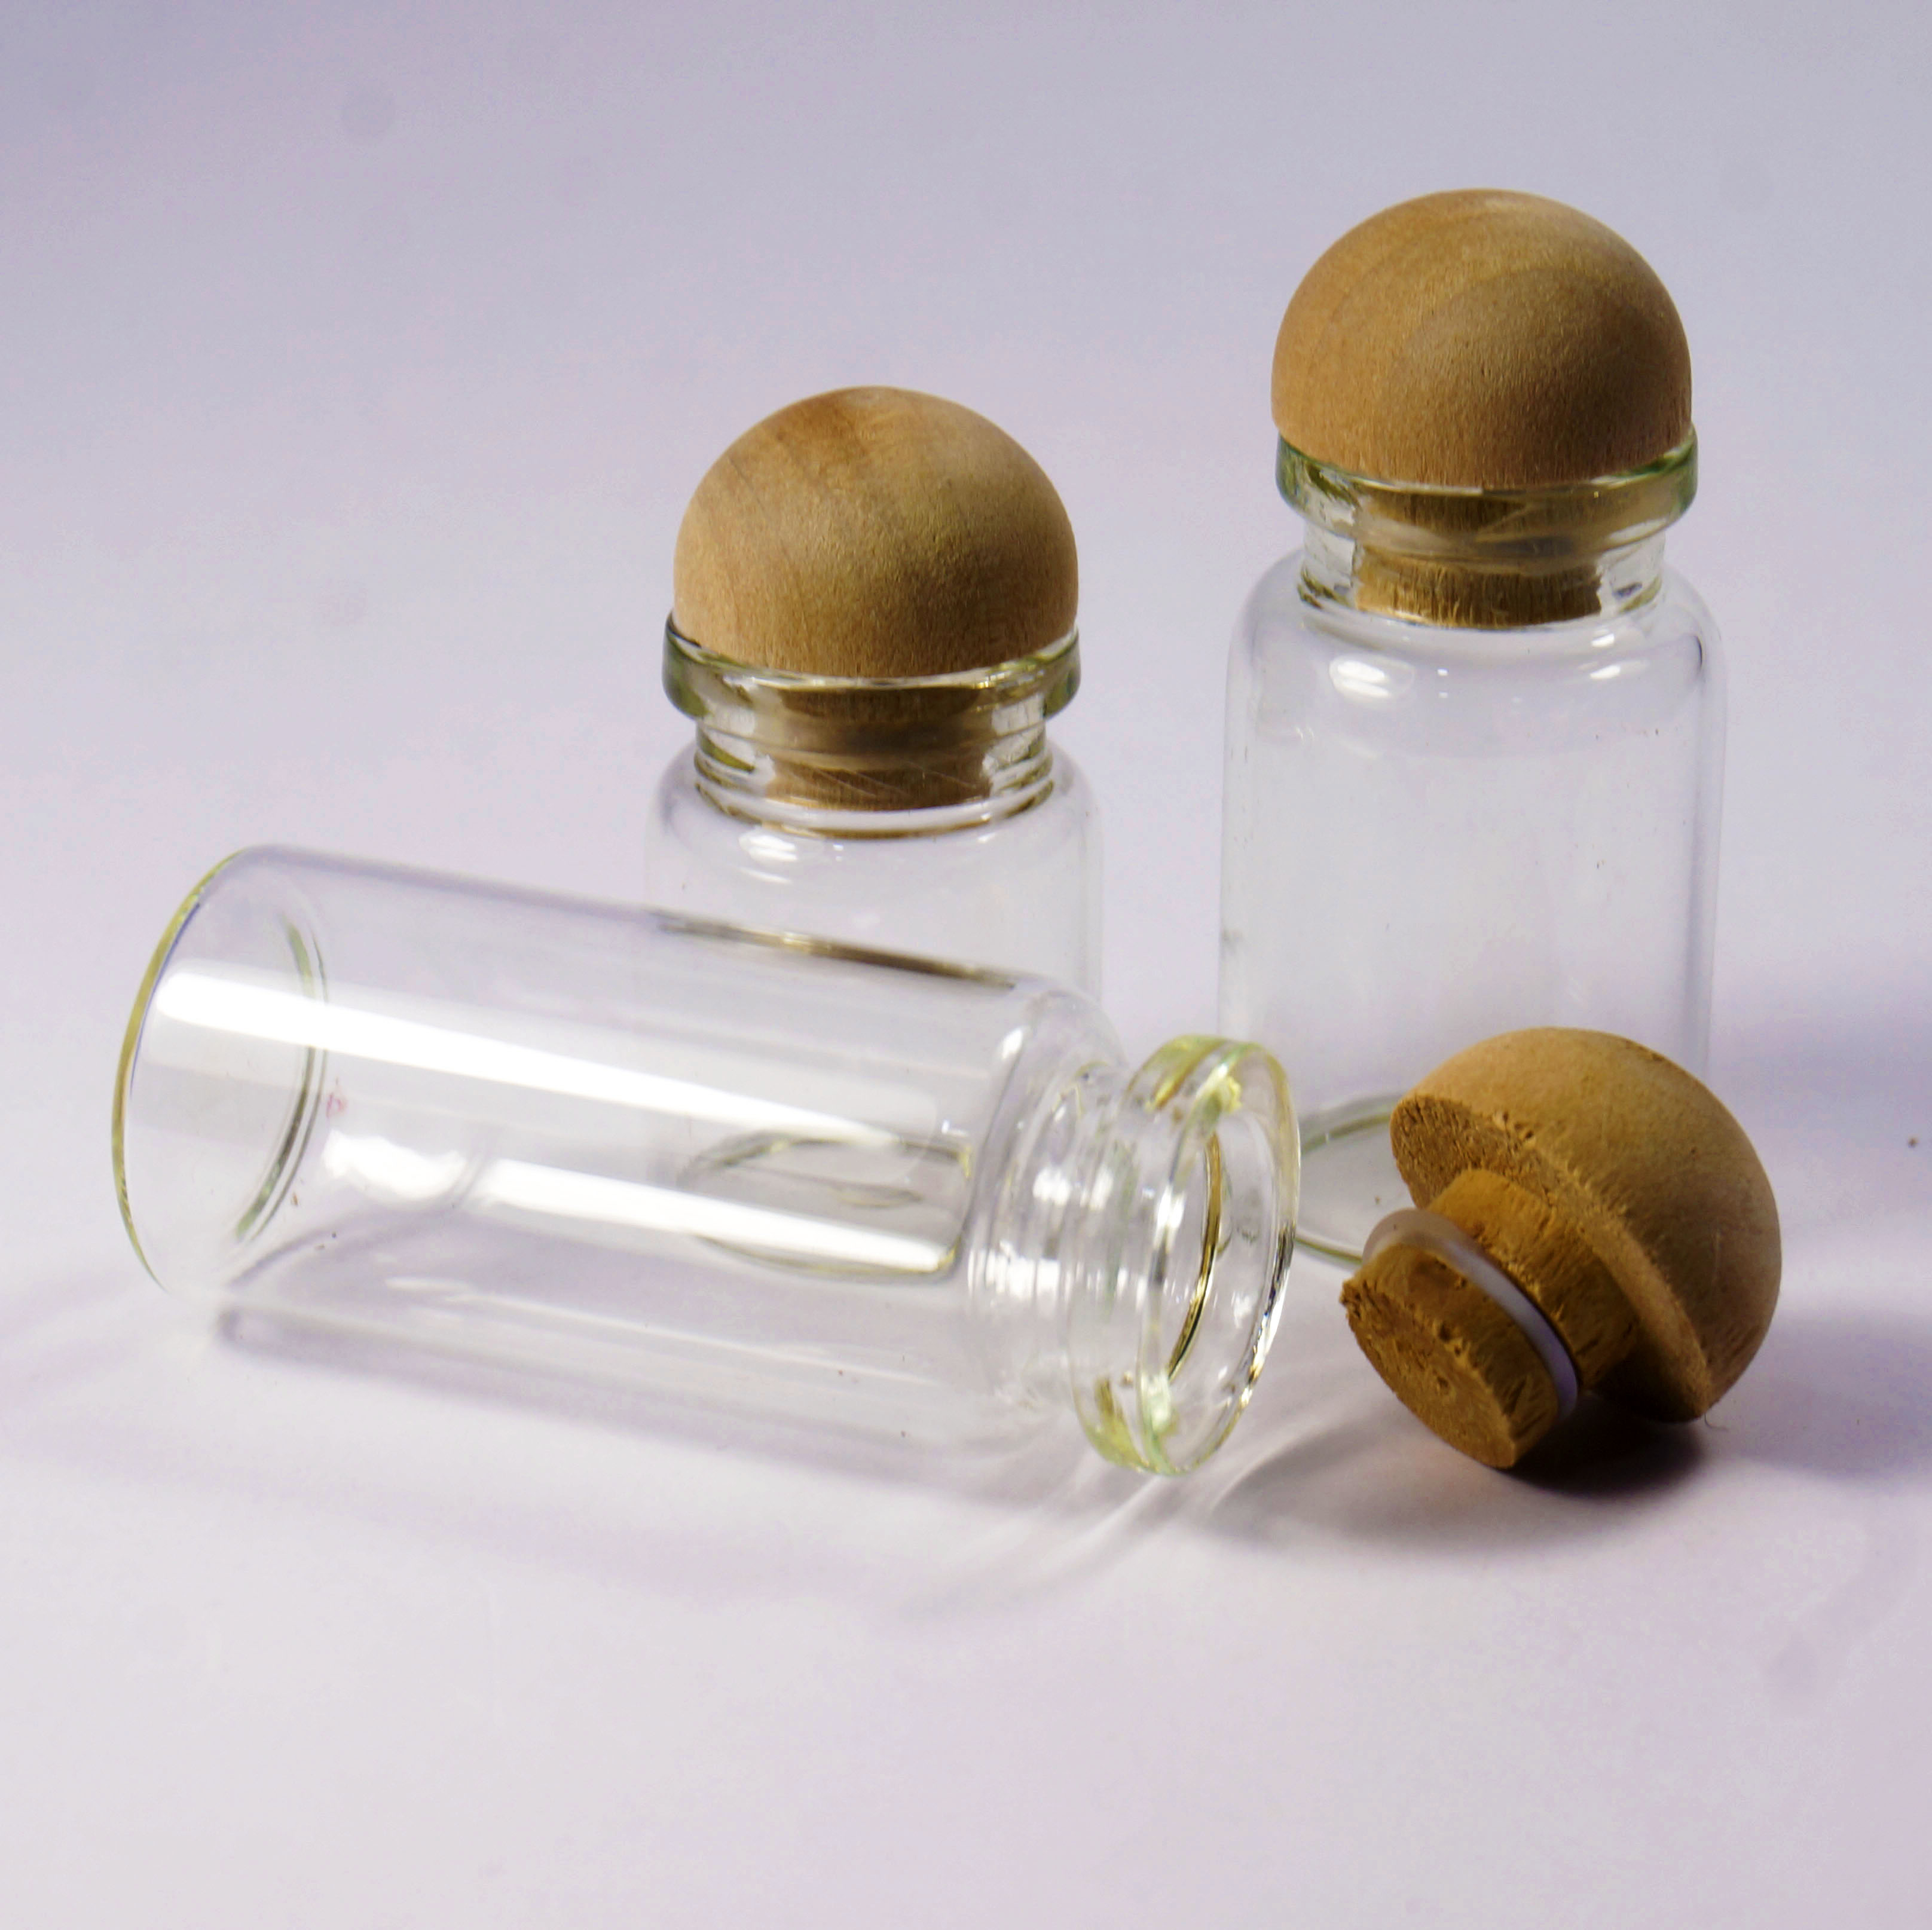 广州市实木塞玻璃瓶价格厂家供应实木塞玻璃瓶价格 磨菇疛造型木塞玻璃瓶 许愿瓶 漂流瓶